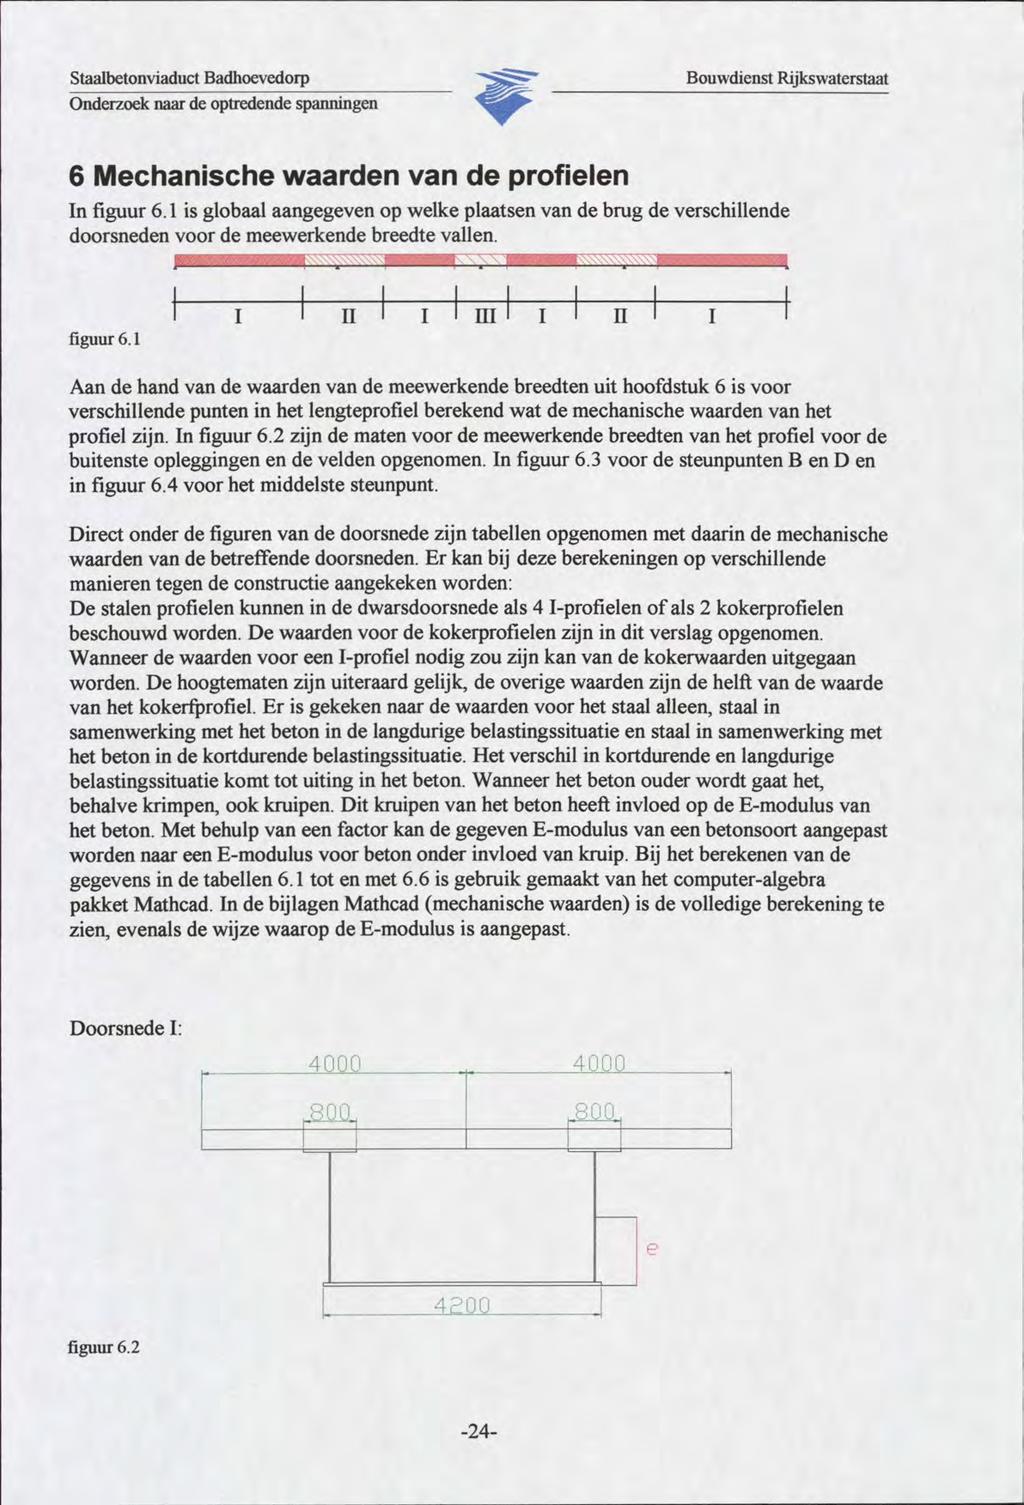 Staalbetonviaduct Badhoevedorp ""SS?!^ Onderzoek naar de optredende spanningen 6 Mechanische waarden van de profielen In figuur 6.